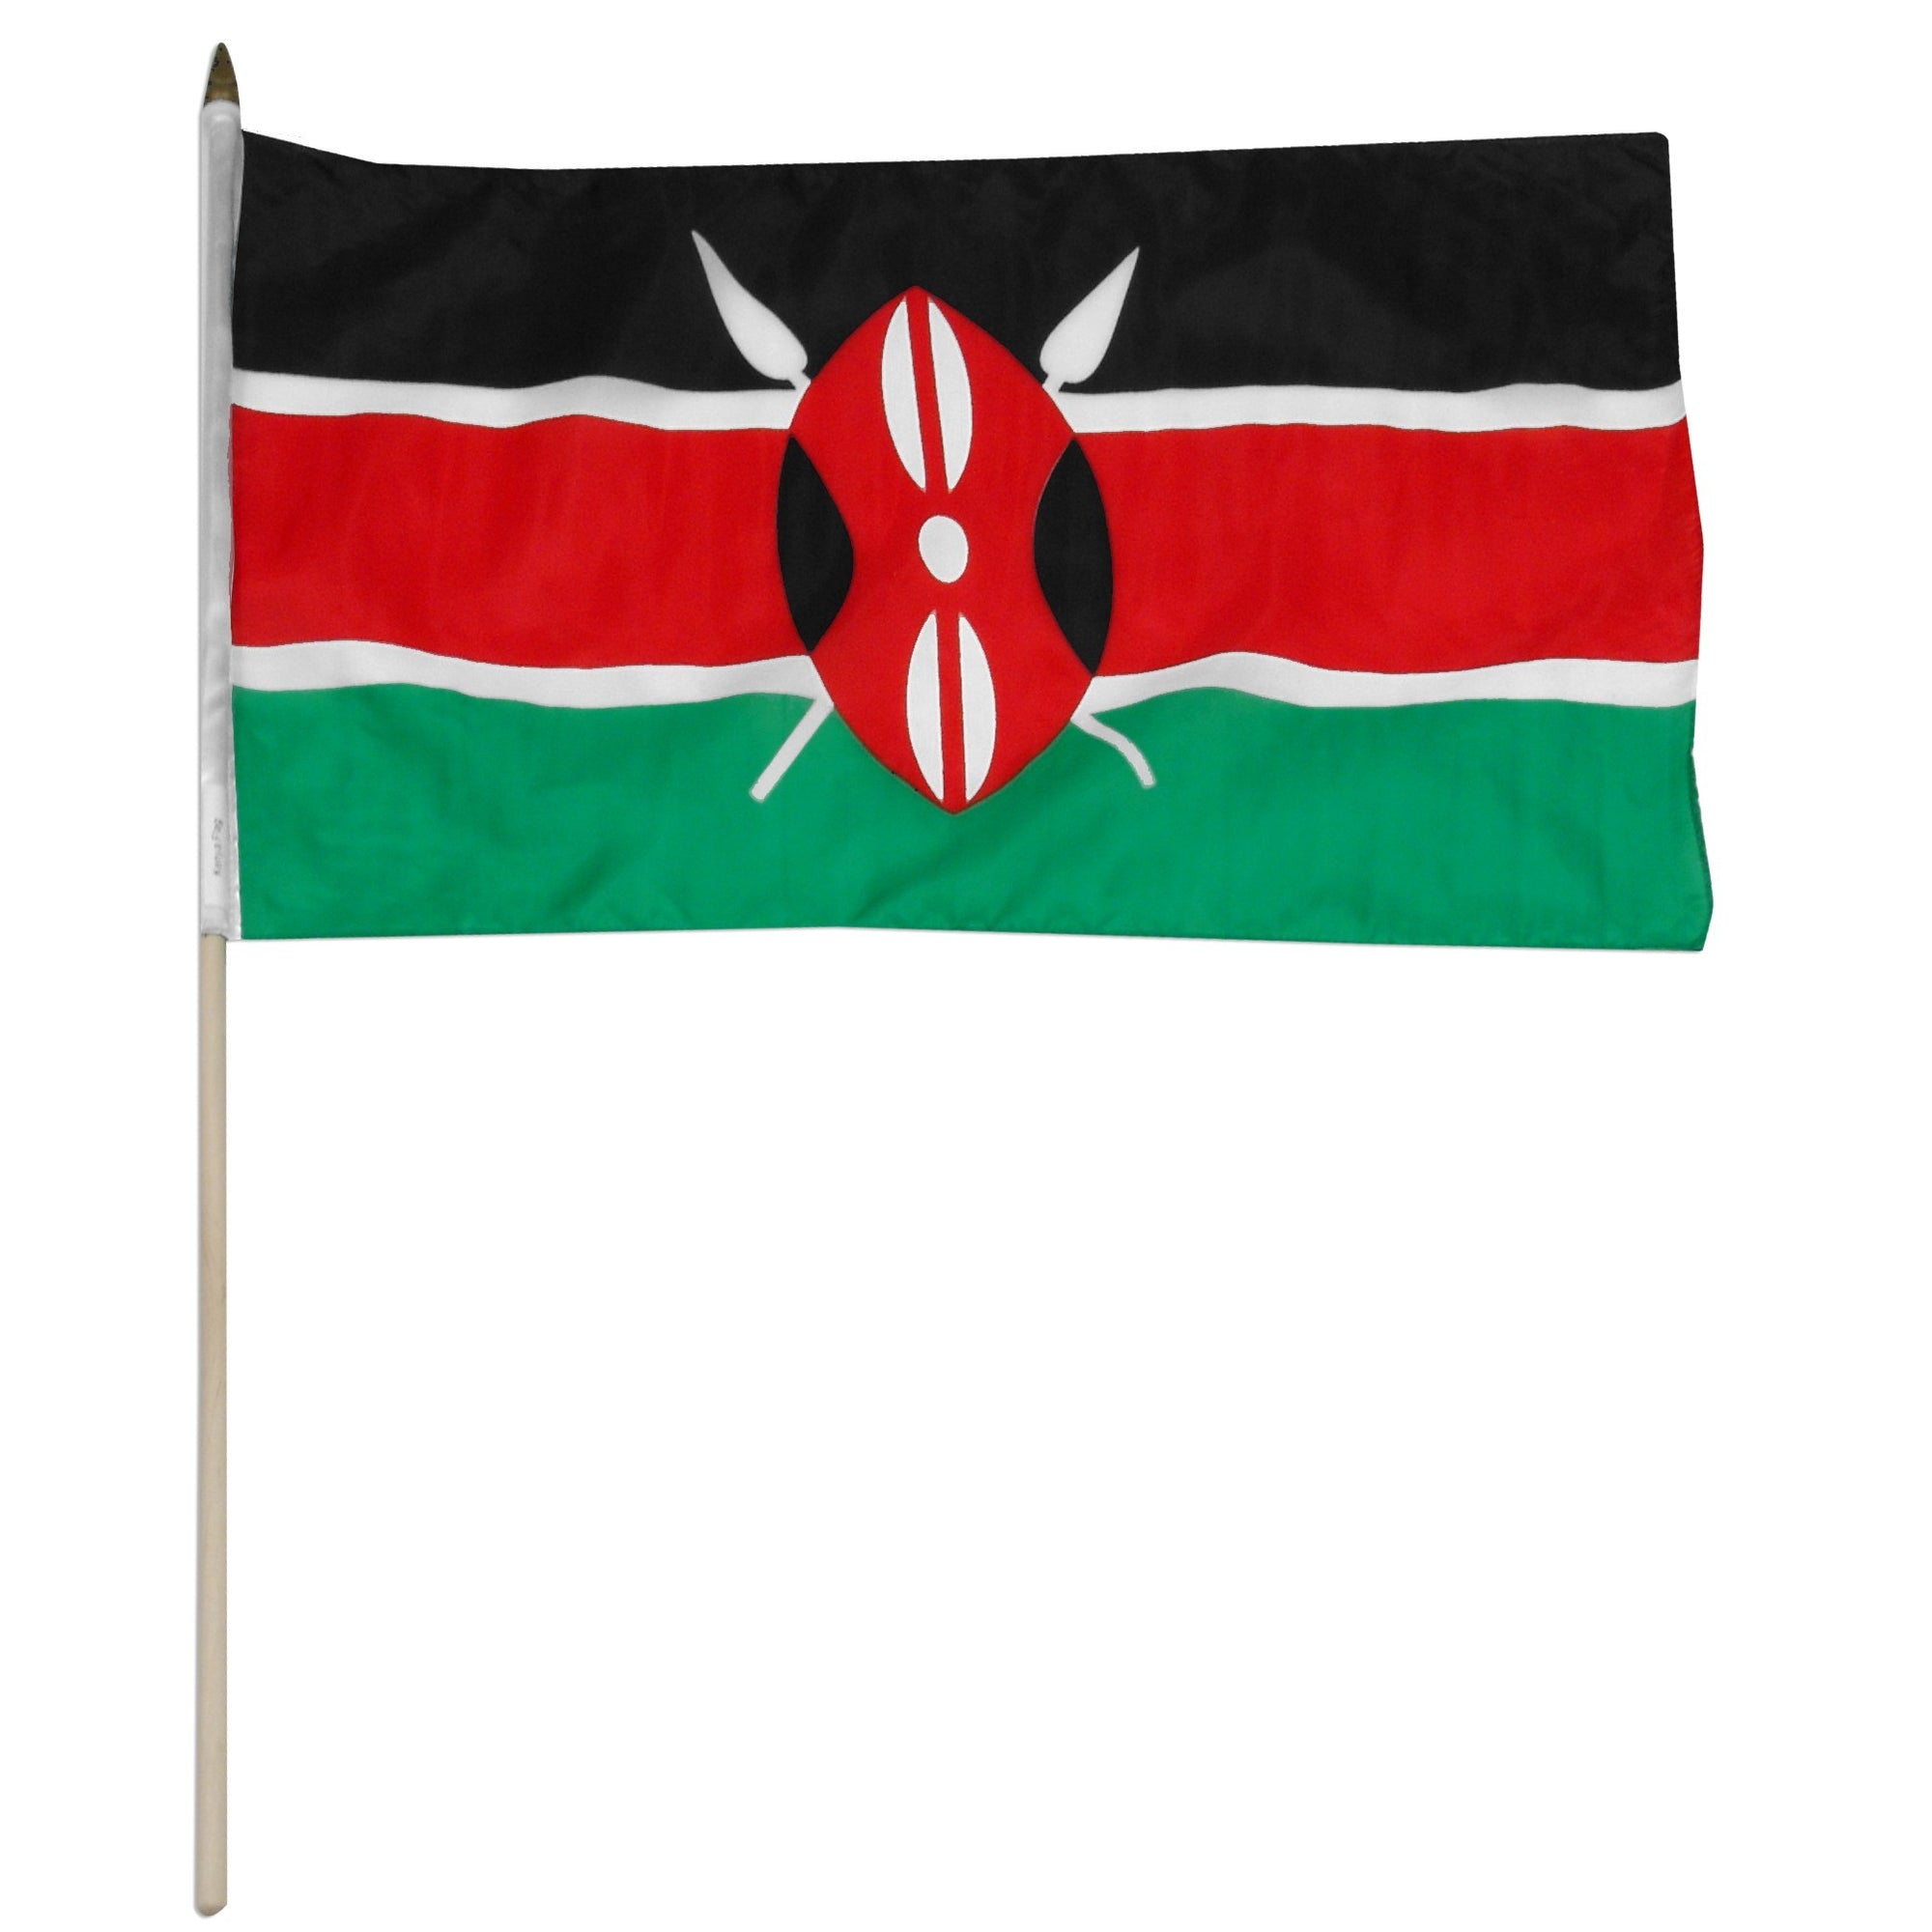 Kenya 12" x 18" Mounted Flag